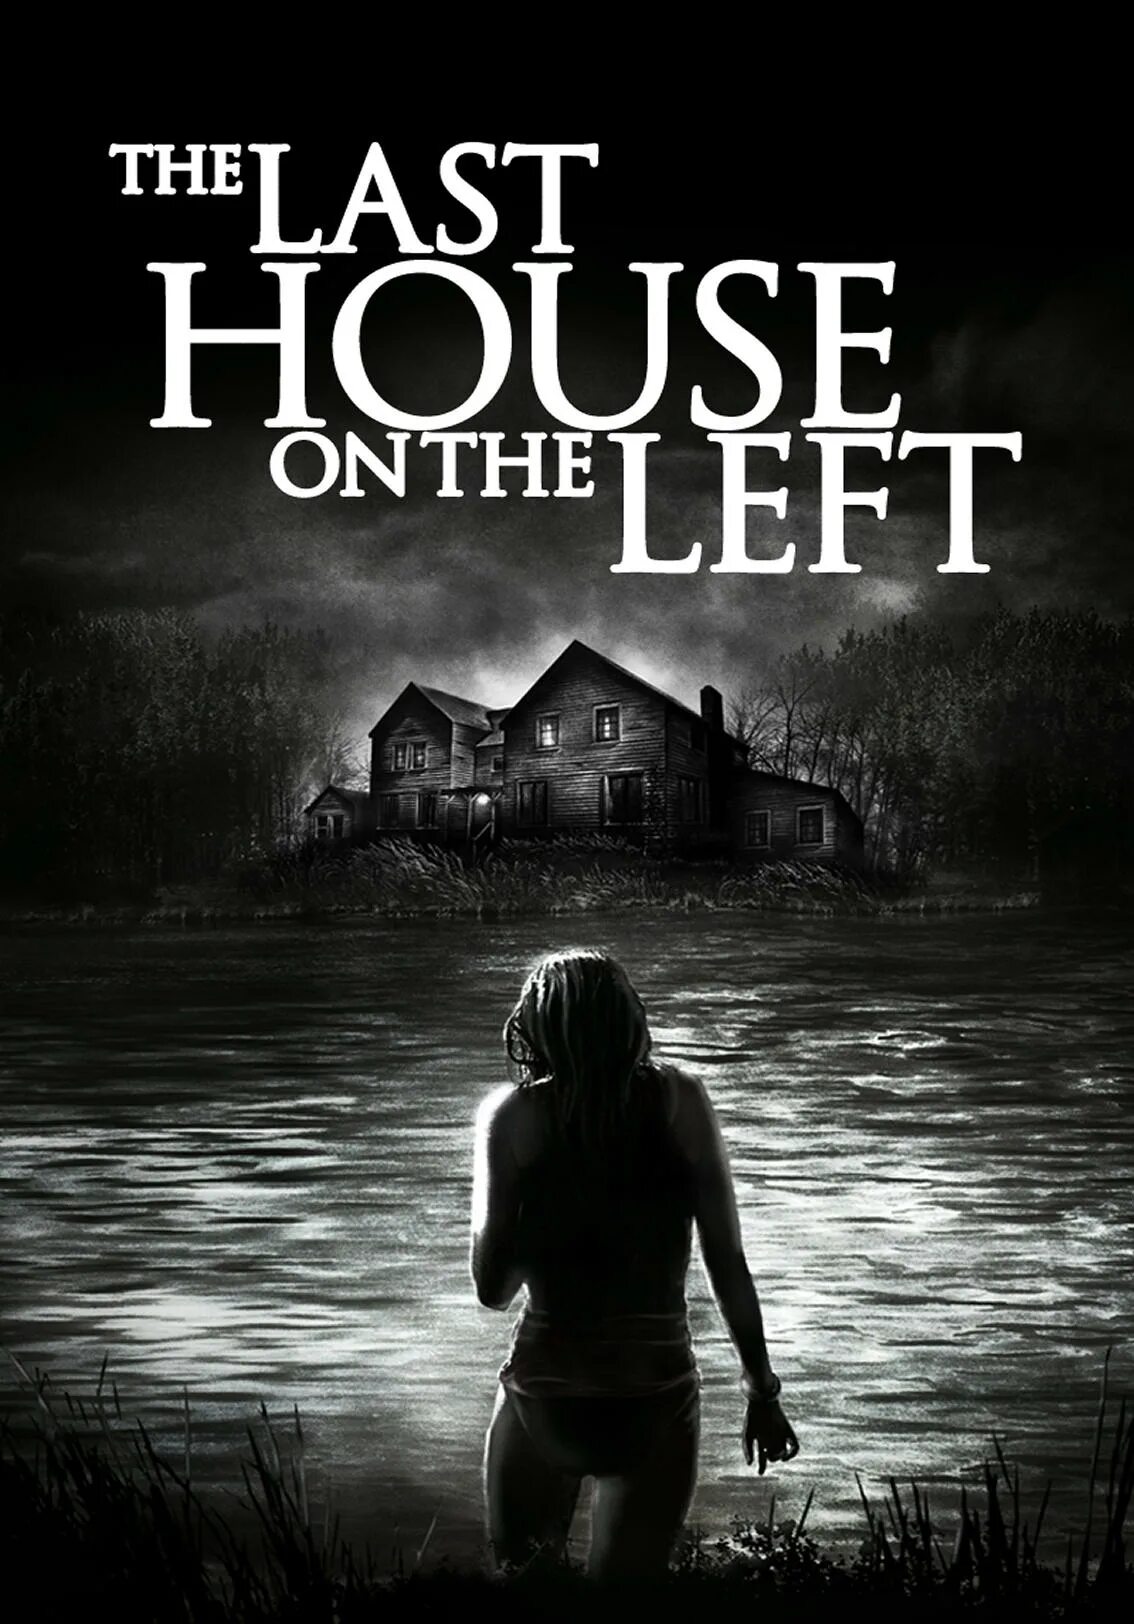 Последний дом слева (2009) Постер. Последний дом слева, реж. Уэс Крейвен, 1972. Ласт хаус